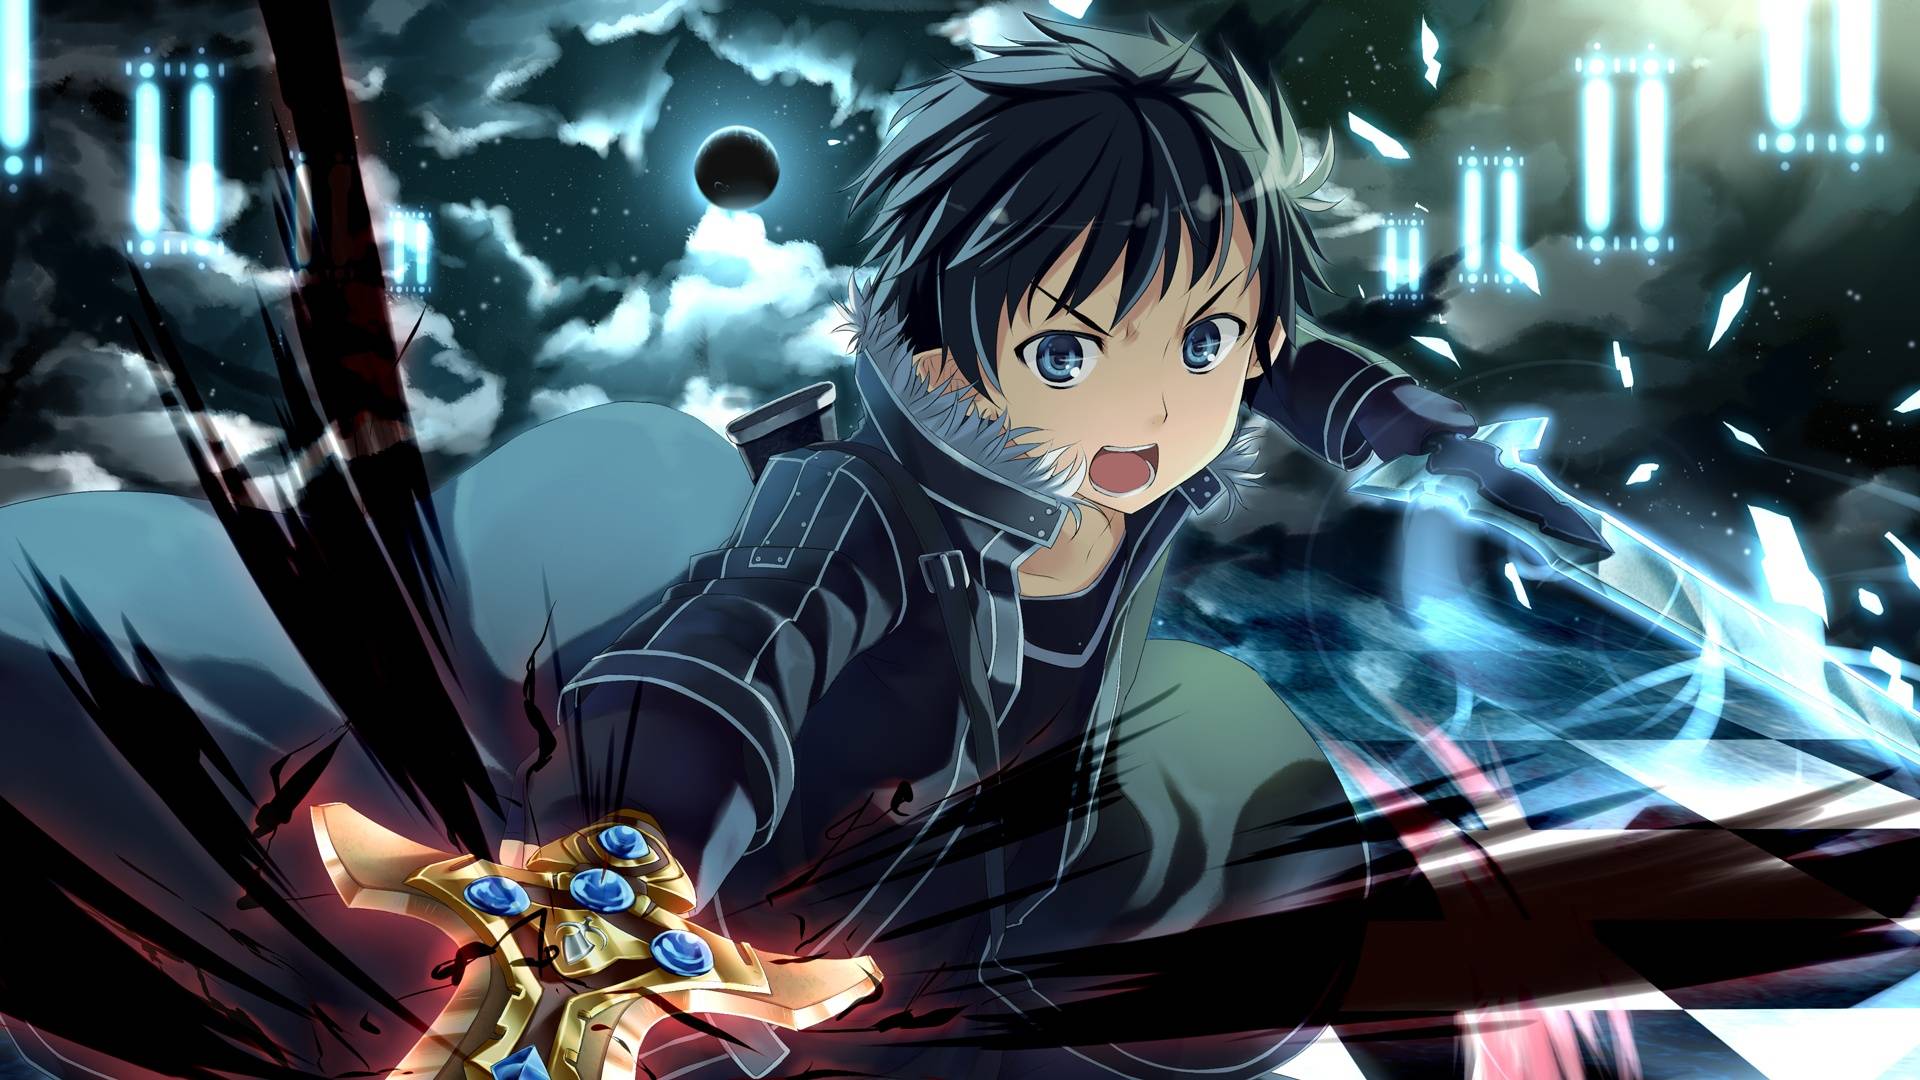 Hãy cùng chiêm ngưỡng hình ảnh của nhân vật chính - Kirito, một game thủ xuất sắc trong thế giới Sword Art Online!